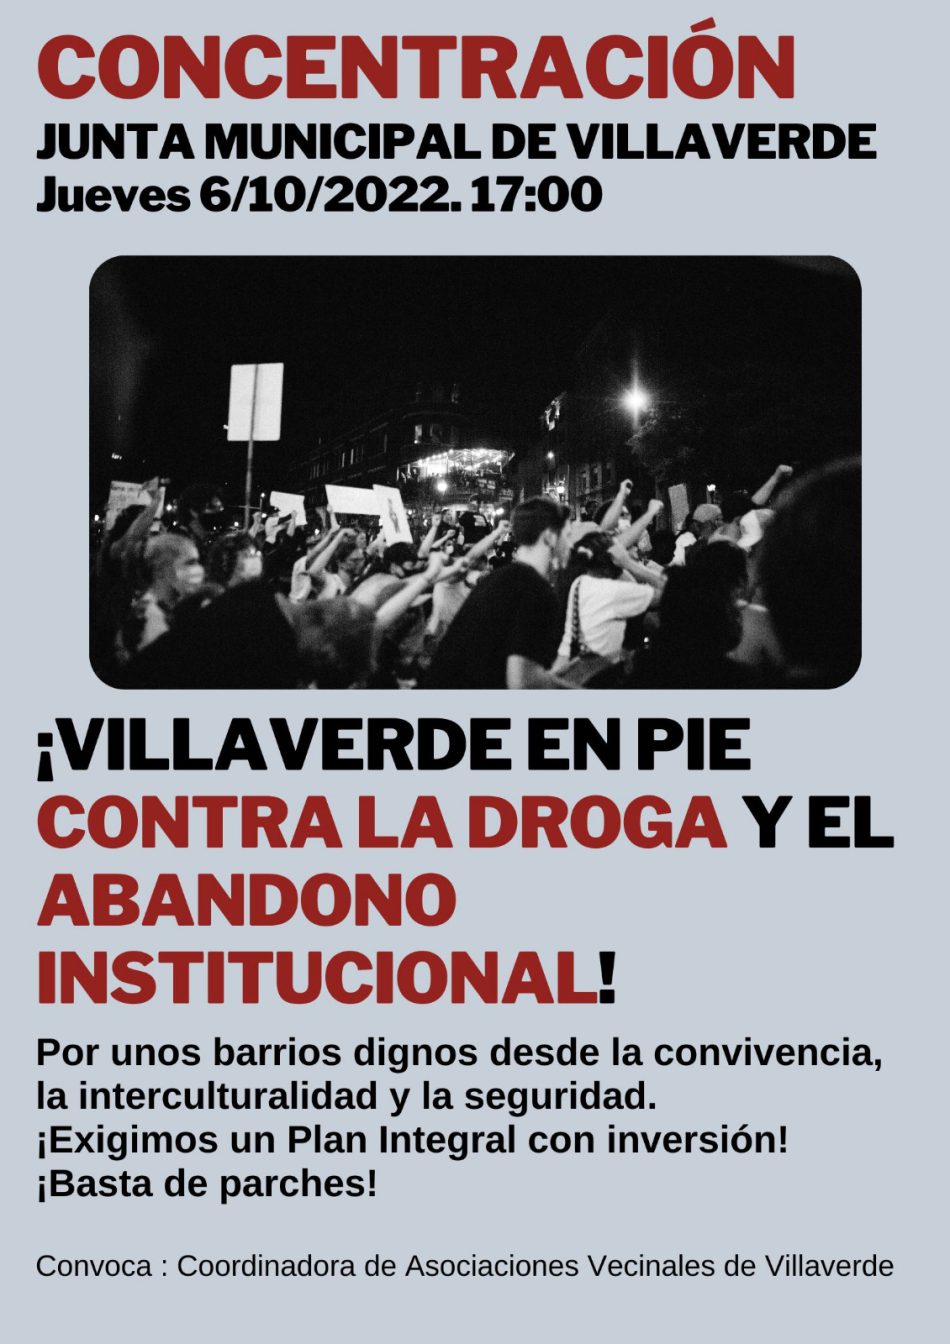 <strong>Villaverde se levanta contra los narcopisos y el abandono institucional</strong>